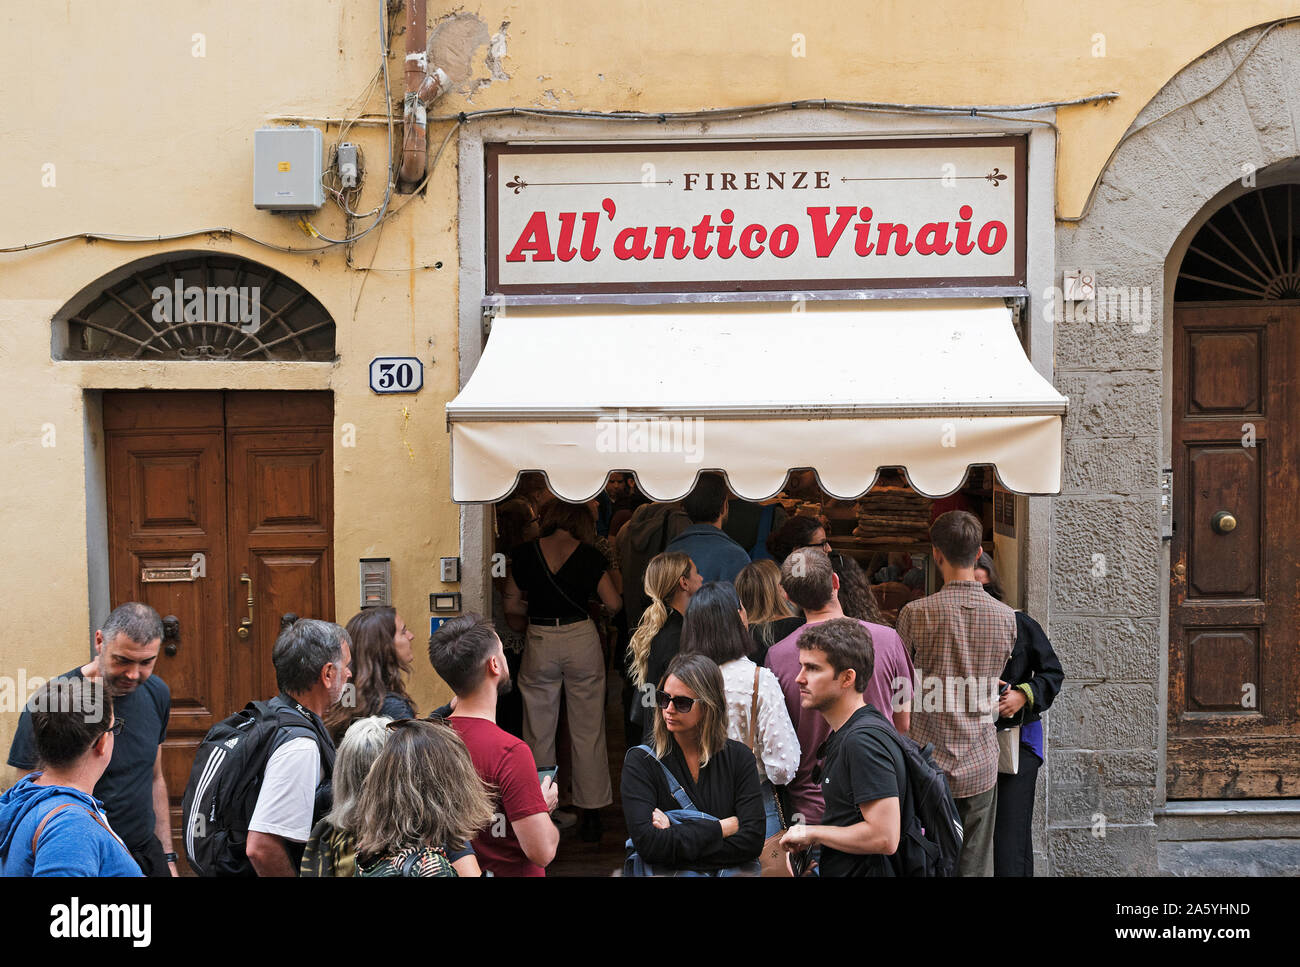 Les clients touristes visiteurs en dehors de la file d'antico, célèbre pour la cuisine toscane Vinaio restauration rapide à emporter. Banque D'Images